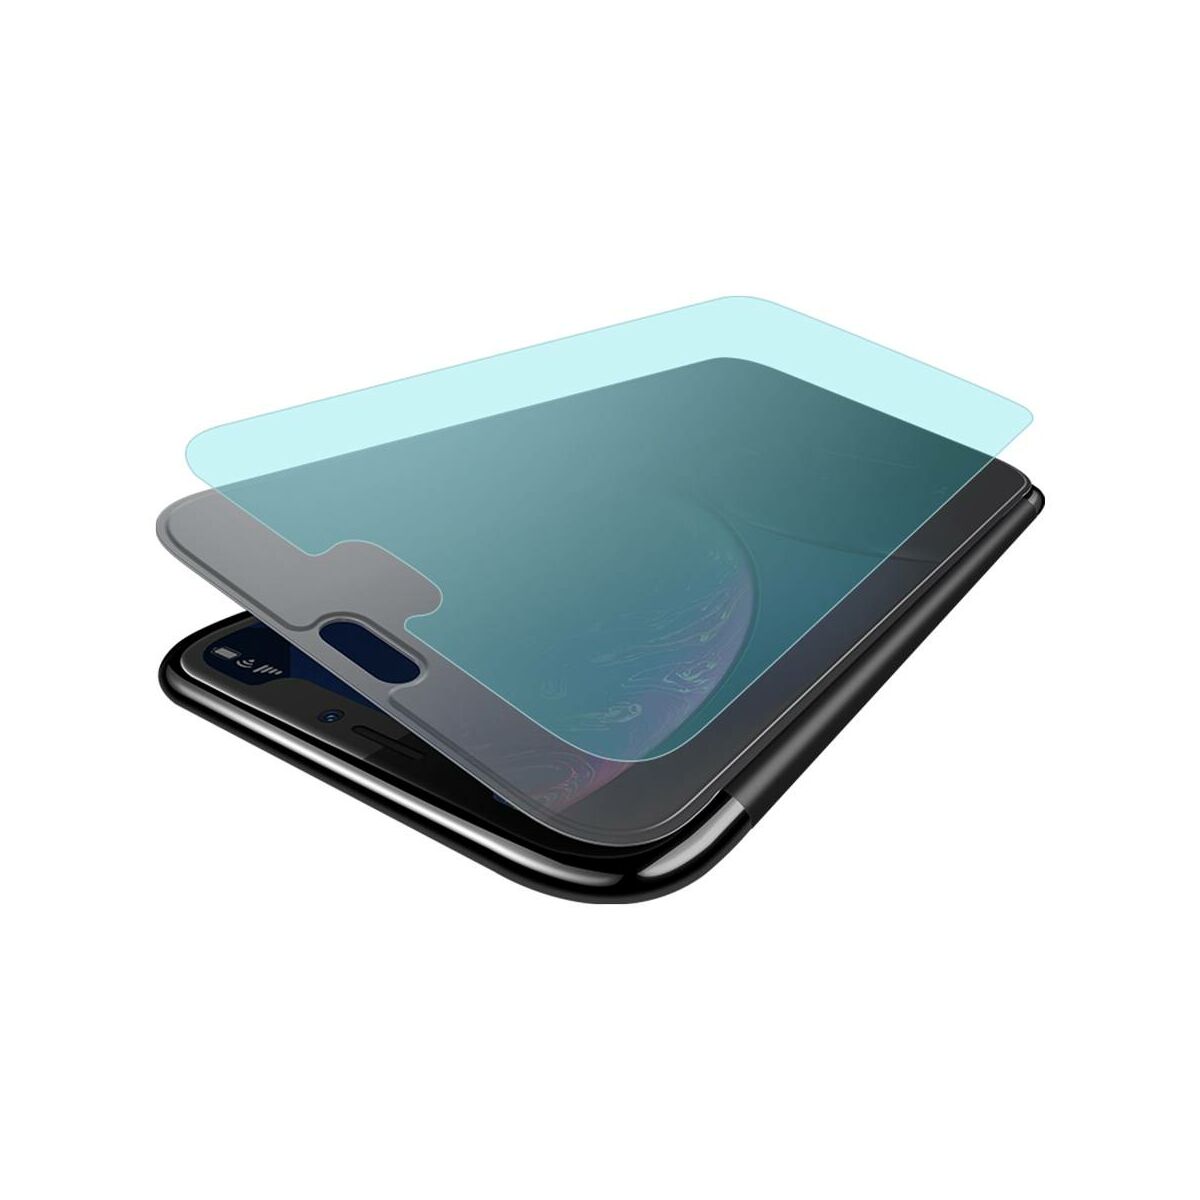 Kép 4/8 - Baseus iPhone XR tok,tok, Touchable kihajtható, érintőfelületű flip tok, fekete (WIAPIPH61-TS01)